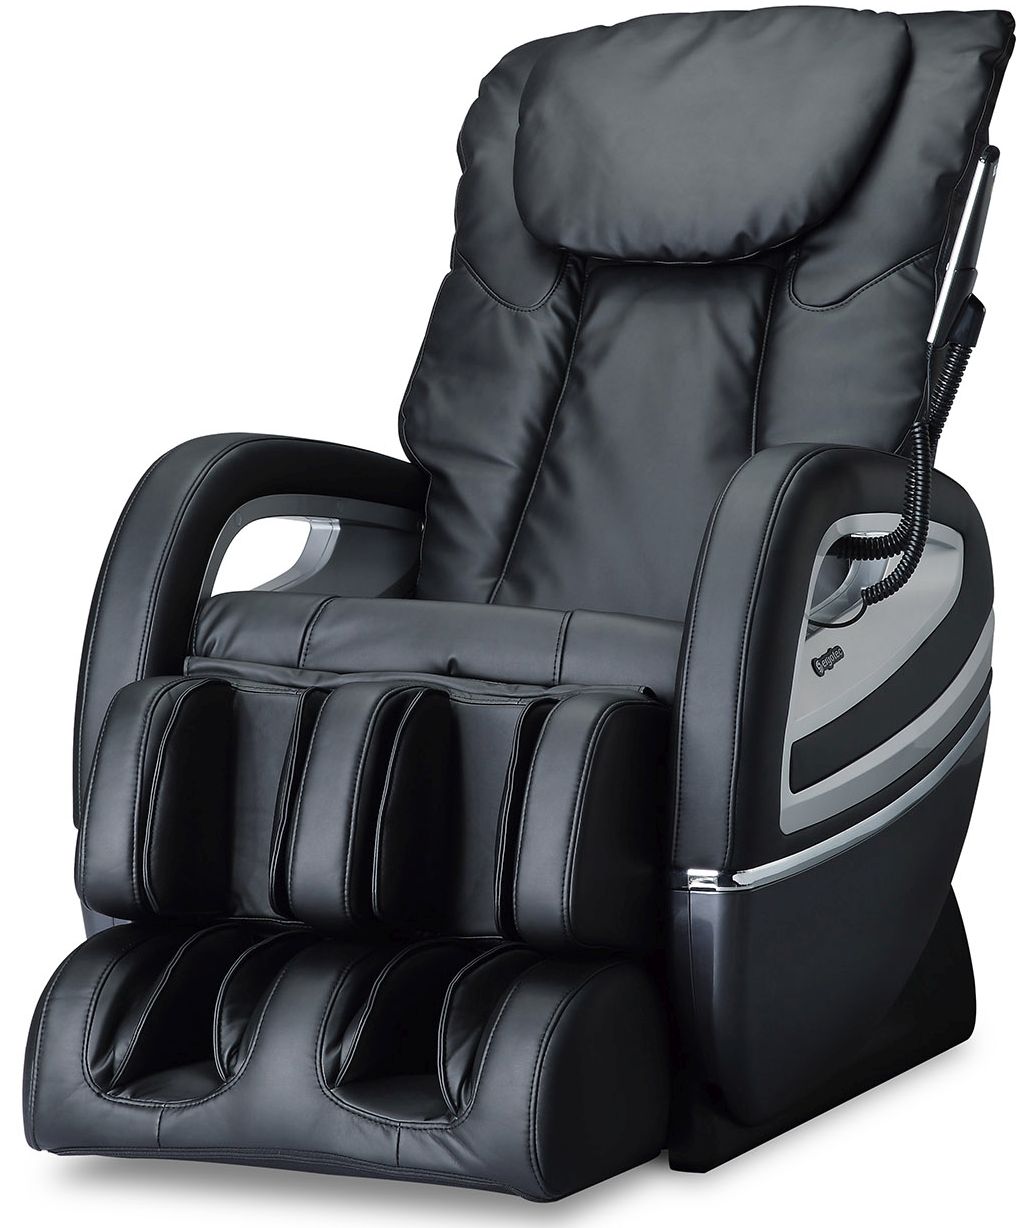 Cozzia® Black Massage Chair